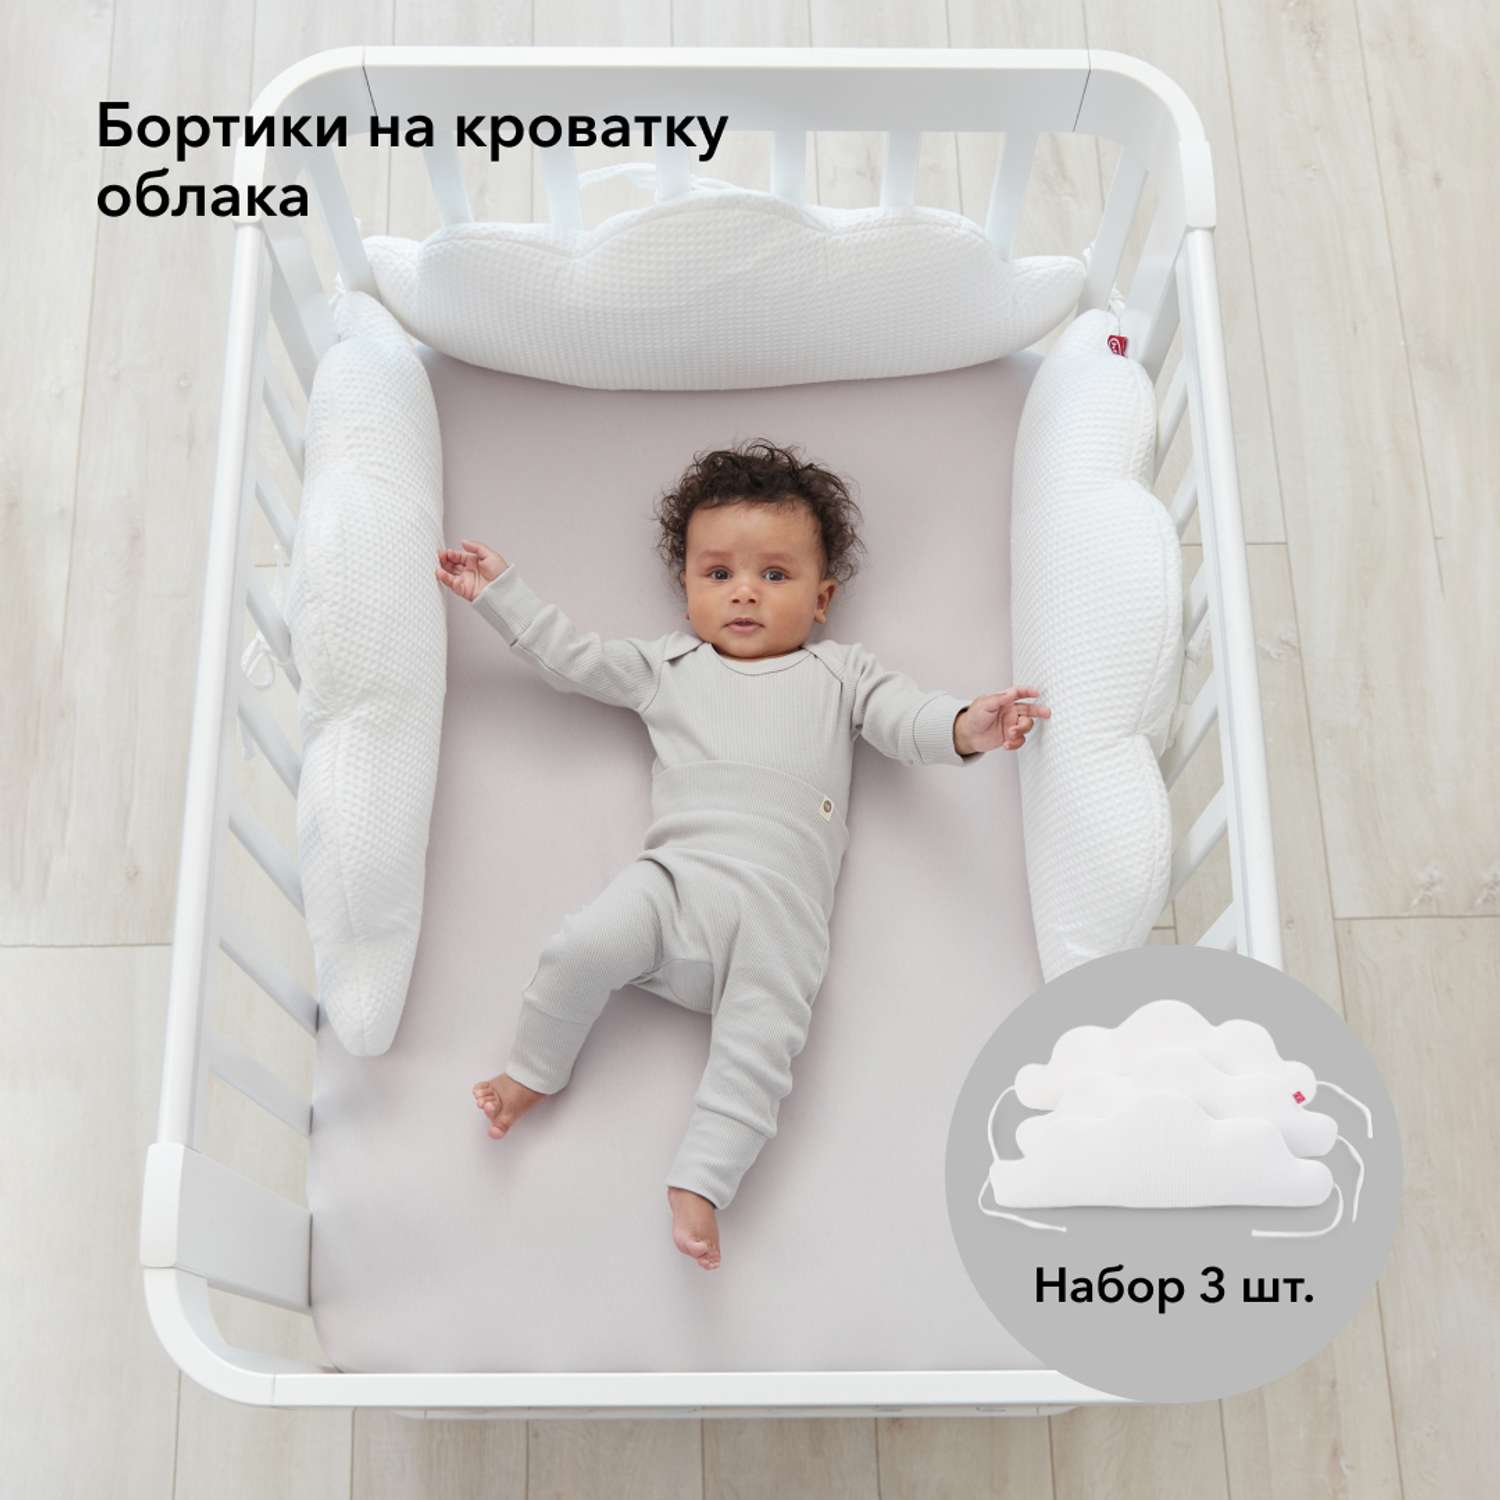 Набор бортиков в кроватку Happy Baby Бортики-облачка на завязках - фото 2